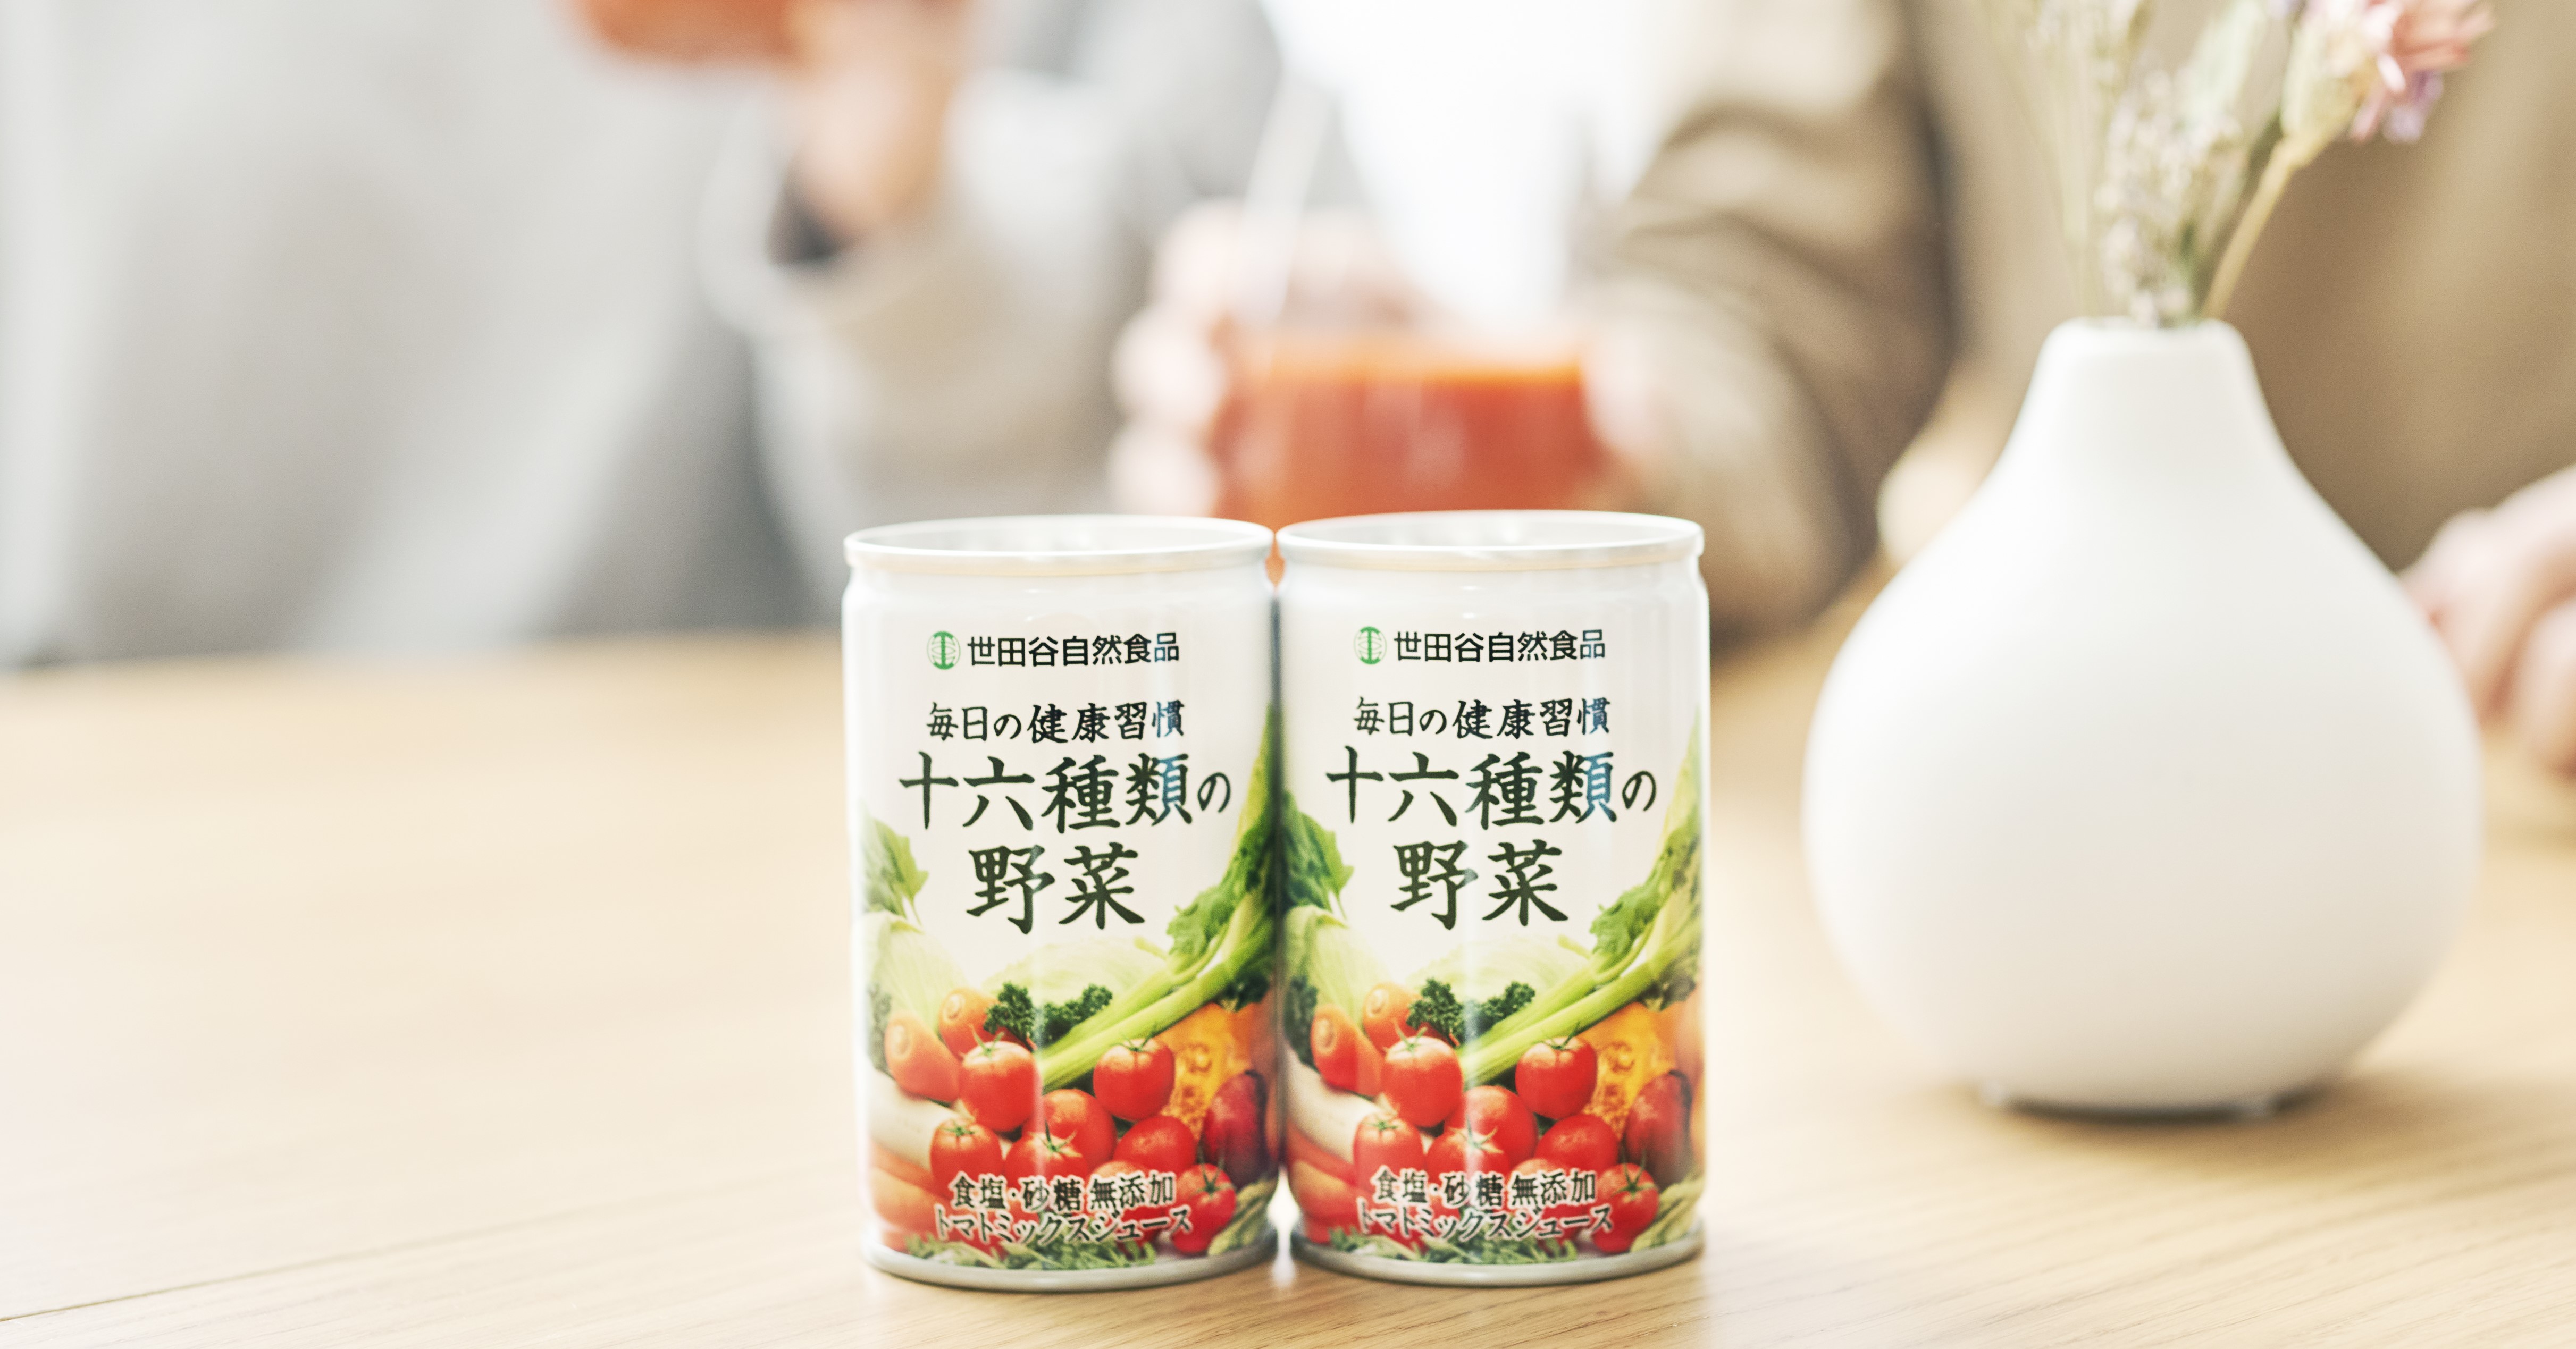 世田谷自然食品の野菜ジュース「十六種類の野菜」が出荷総数２億